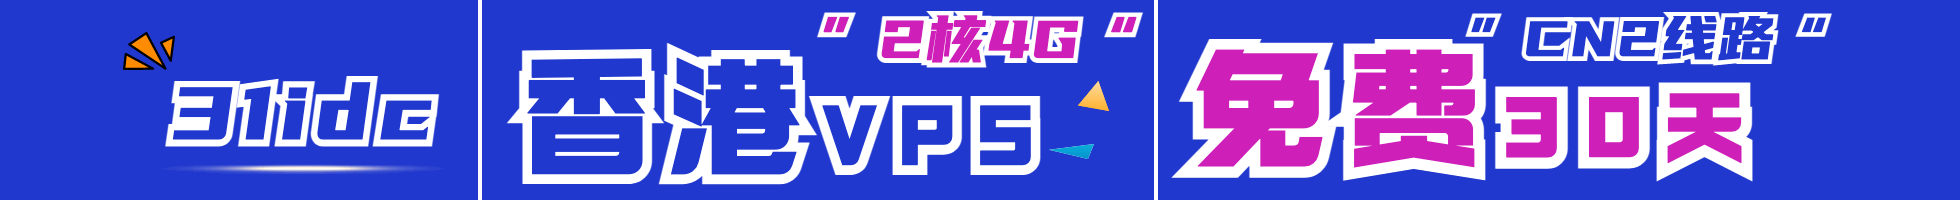 LOCVPS，海外免备案VPS特价优惠低至252/年，终身8折循环优惠/中国香港/新加坡数据中心，KVM虚拟/50Mbps带宽